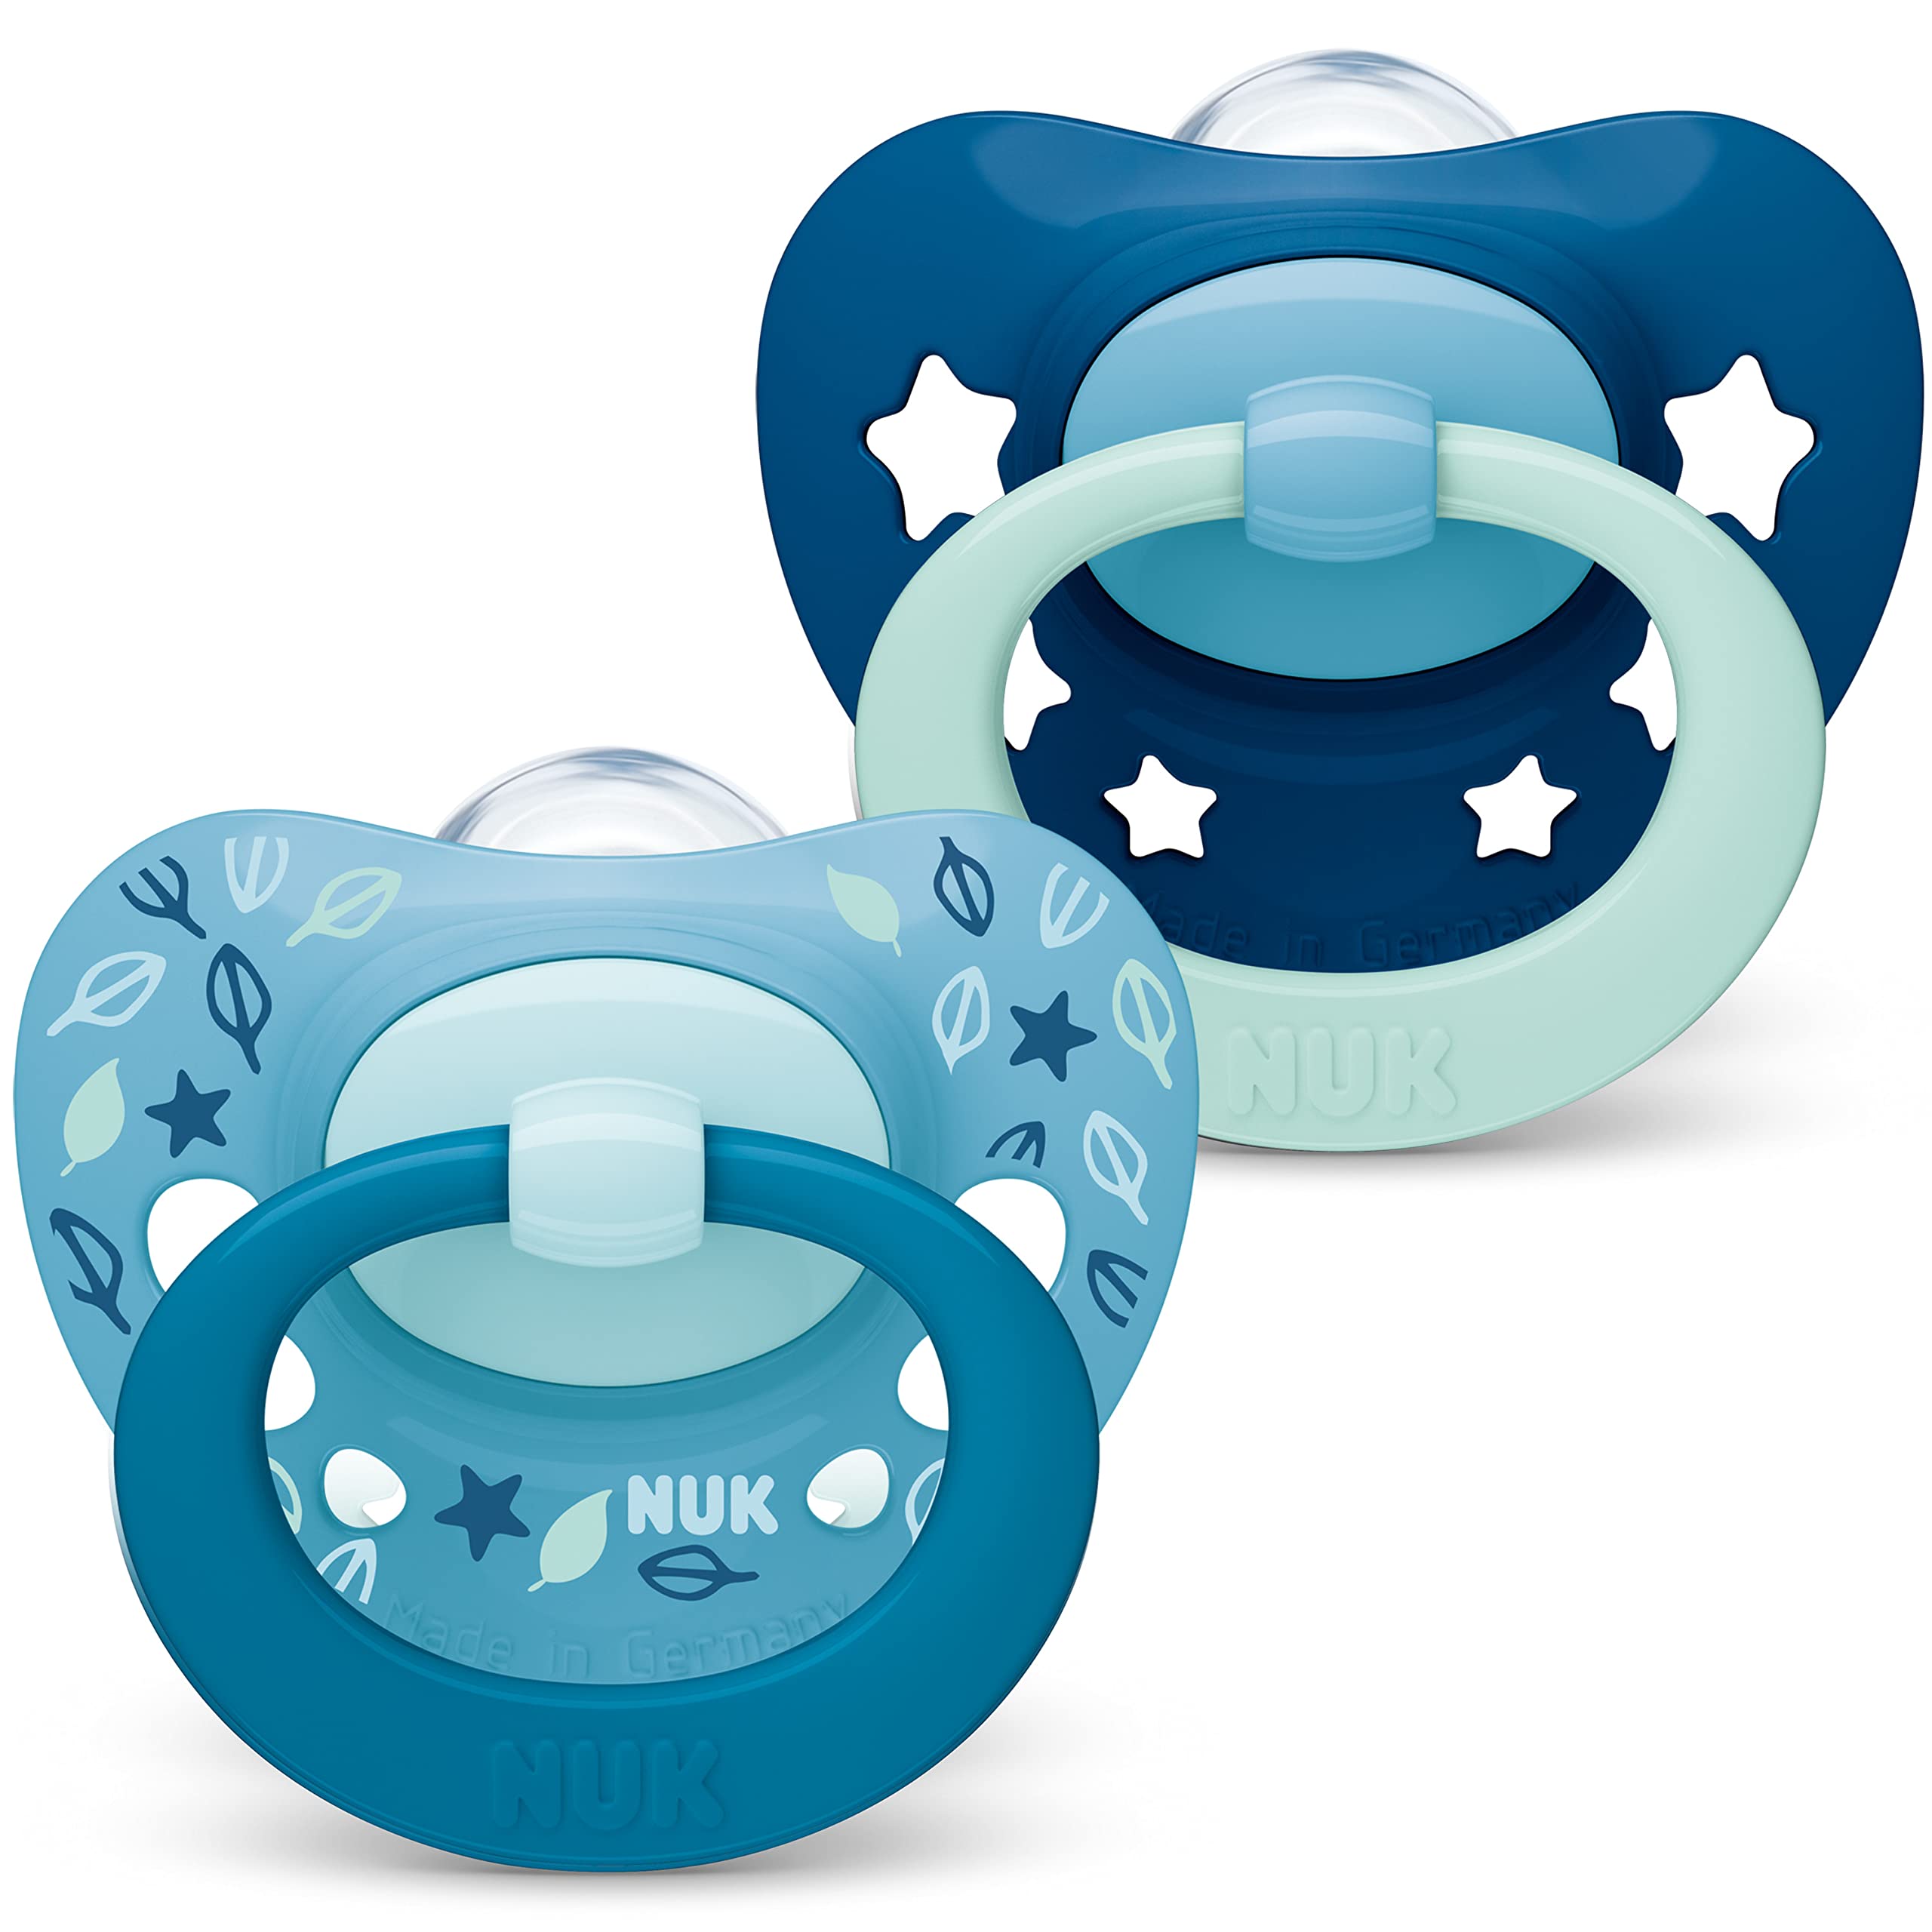 escompte élevé Nuk Signature – Lot de 2 tétines en silicone BPA – 18-36 mois – Motif étoiles bleu sarcelle 10739677 Vfj07hKQz Boutique